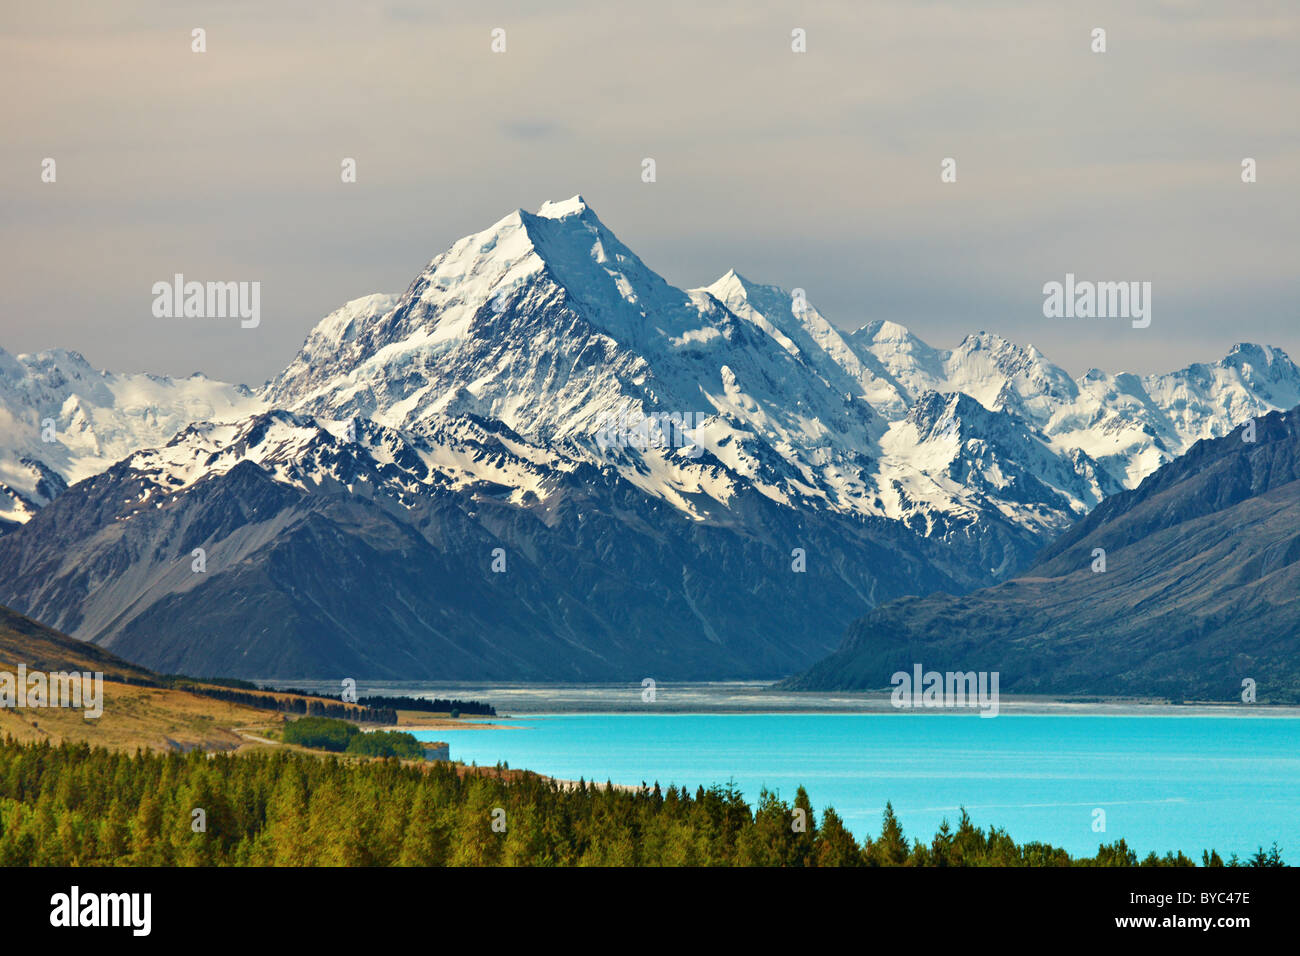 Le lac Pukaki et le Mont Cook, Nouvelle-Zélande Banque D'Images